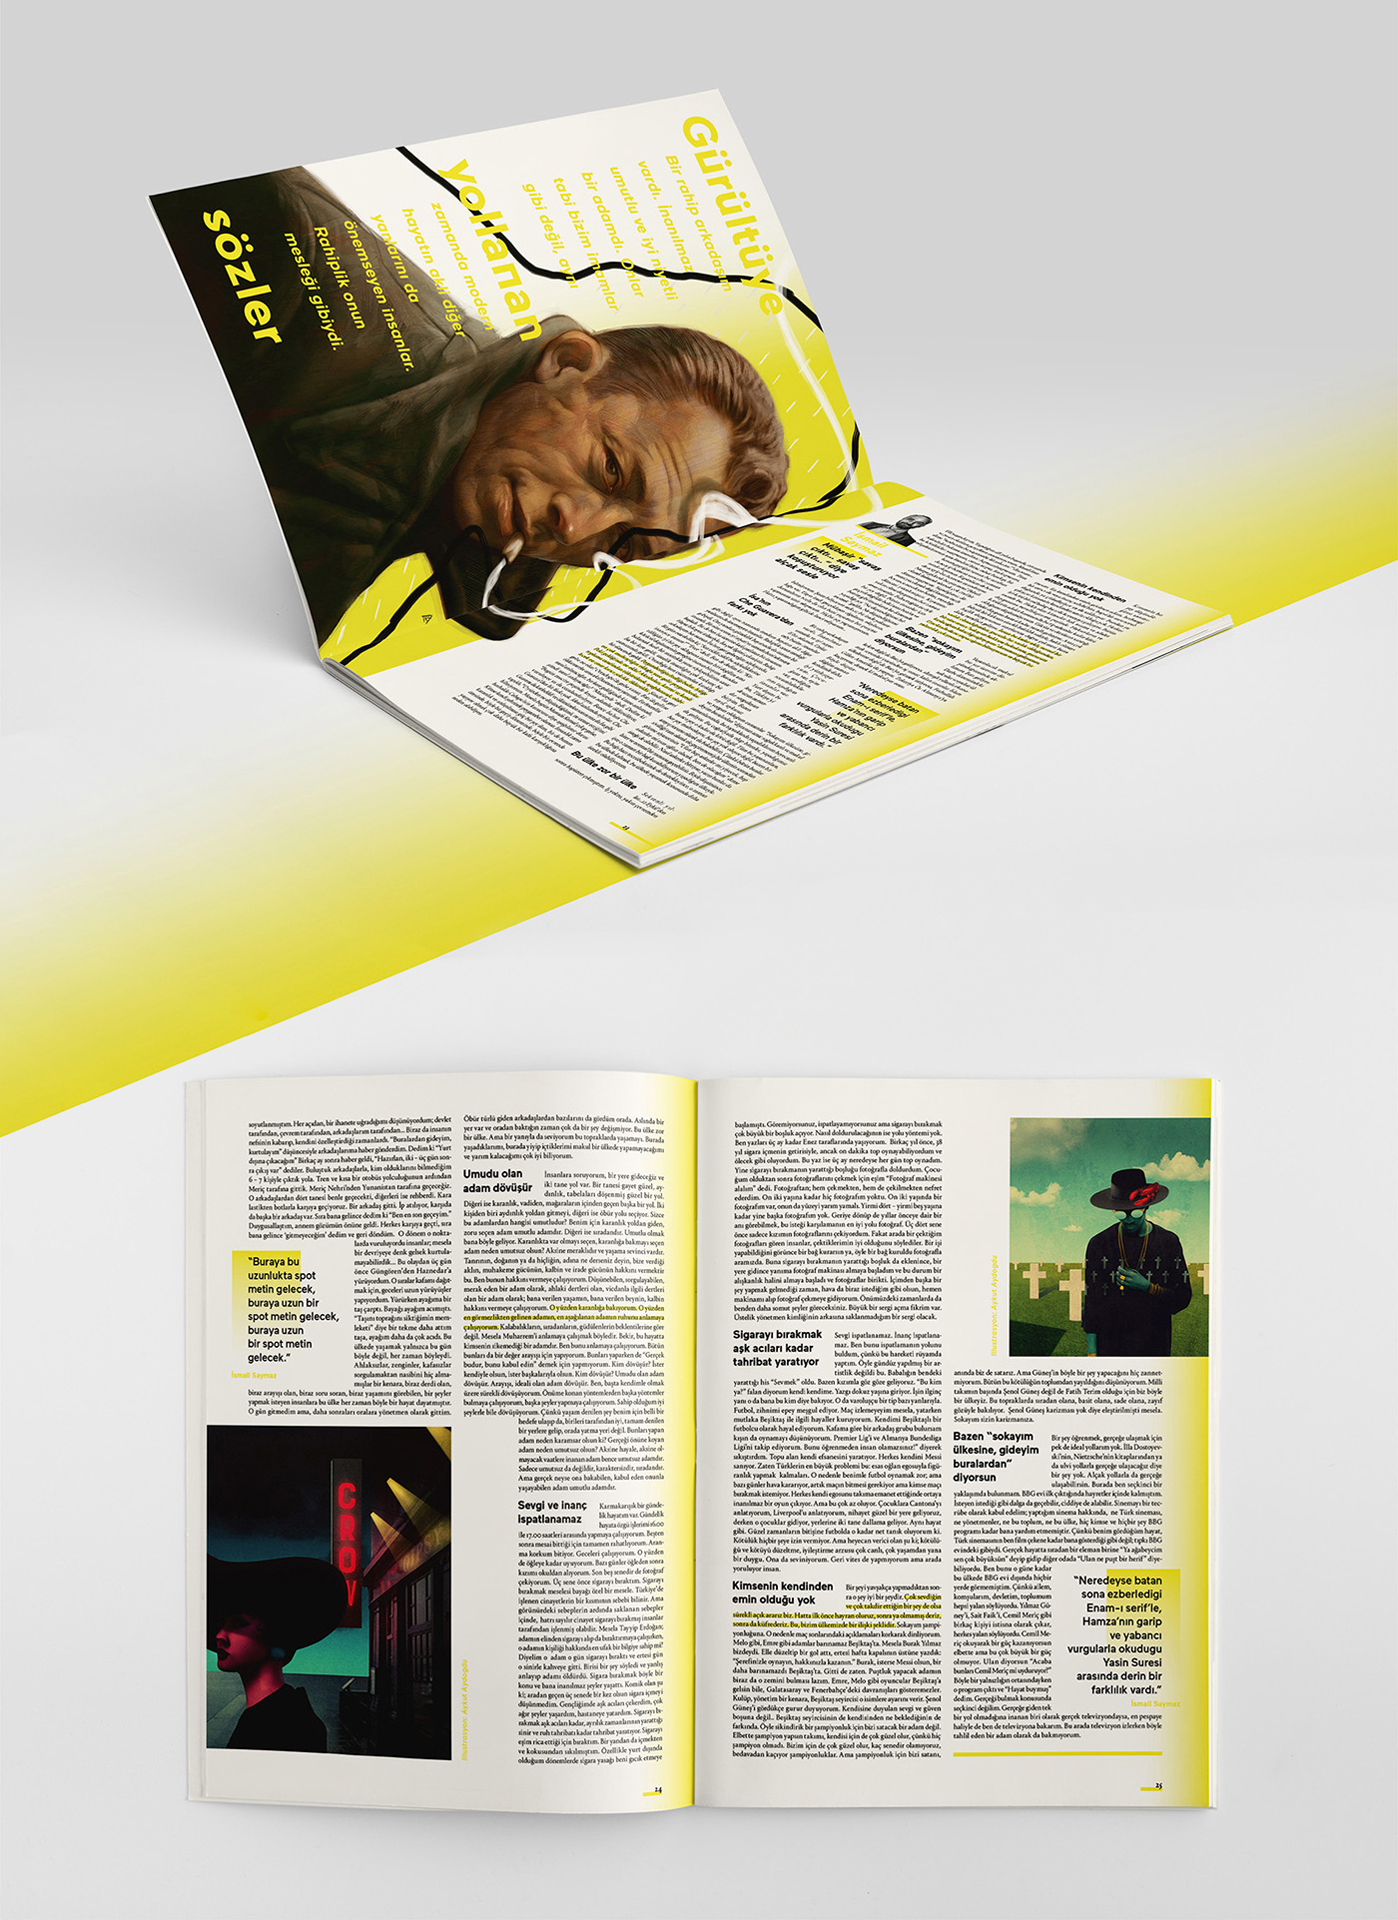 Tuhaf Magazine by Aksel Ceylan & Efe Kaptanoğlu & Taylan Özgür Akçam - Creative Work - $i